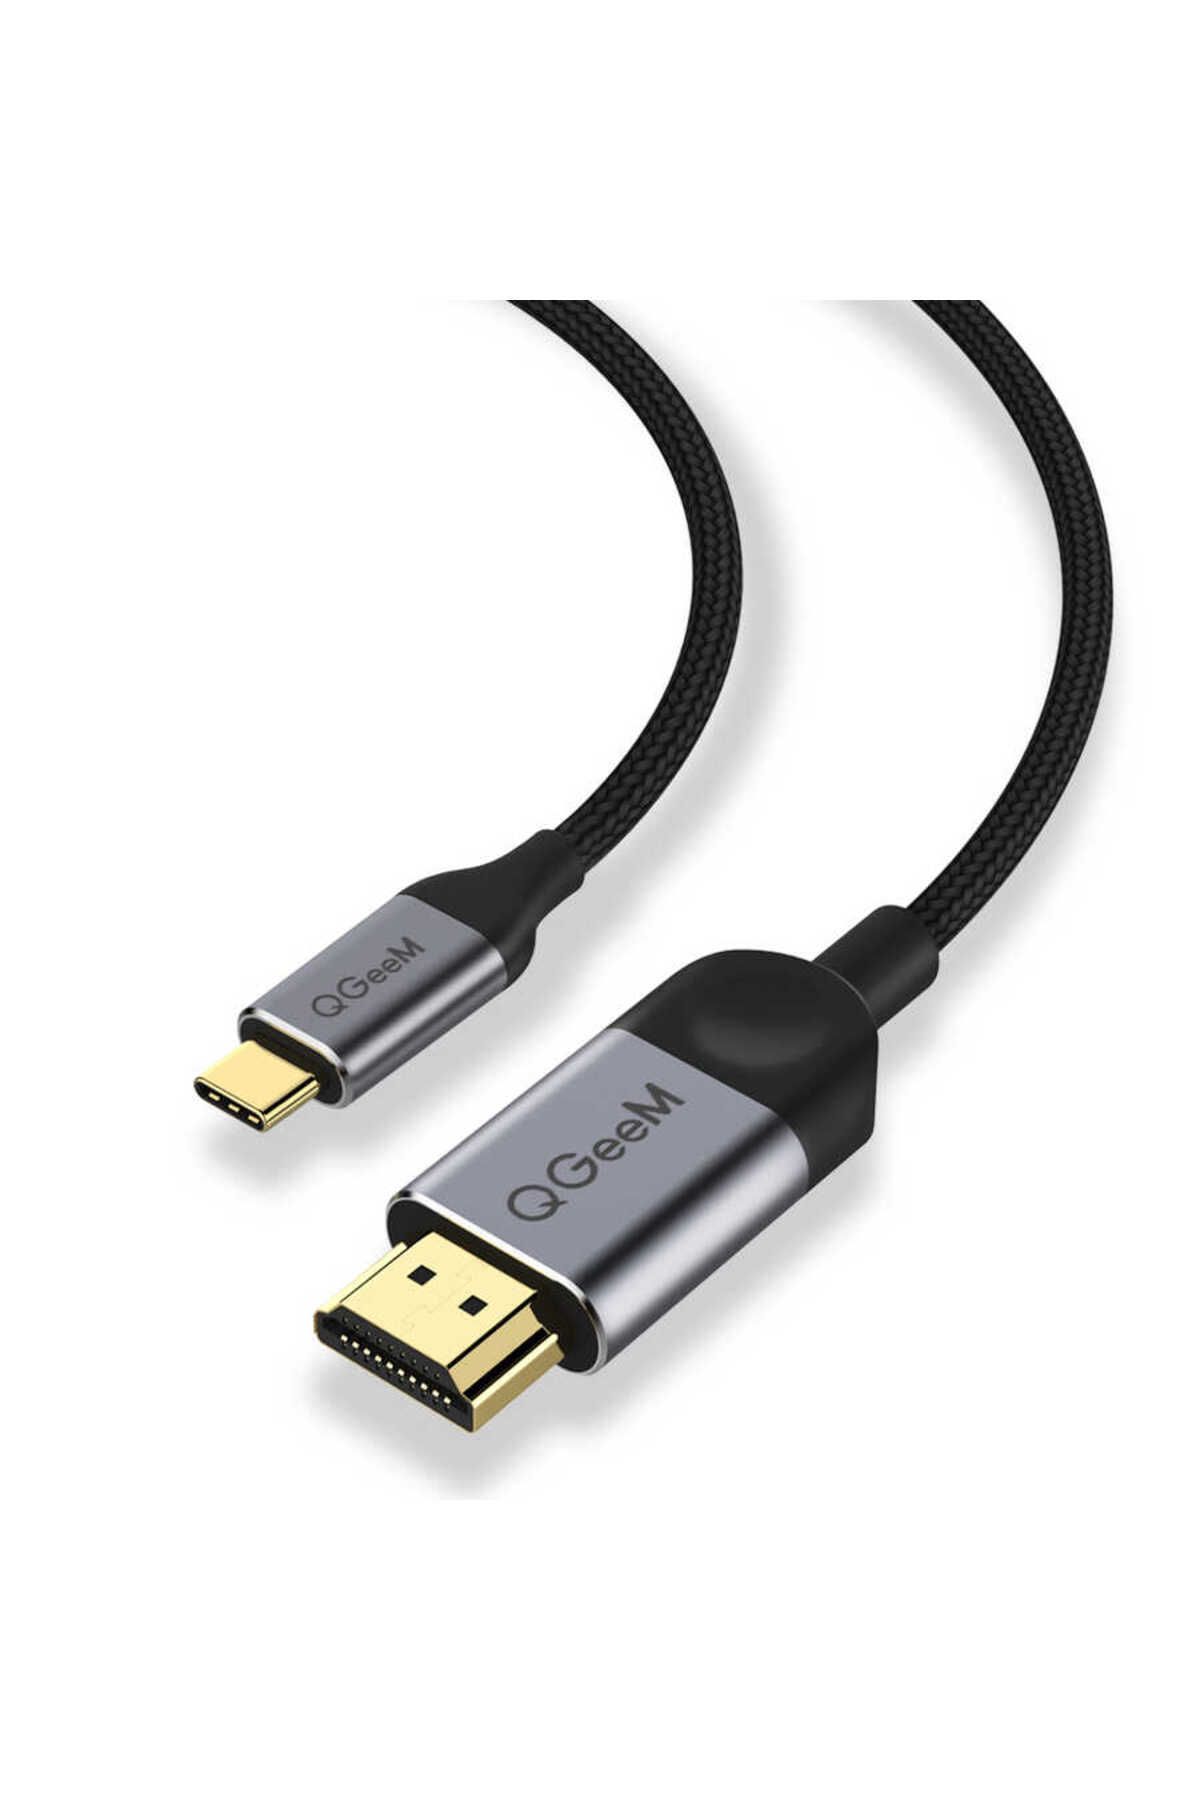 Dolia Type-C 3.1 Display Port alternatif mod destekleyen cihazlar İçin Type-C'den HDMI'ya Aktarım Kablo